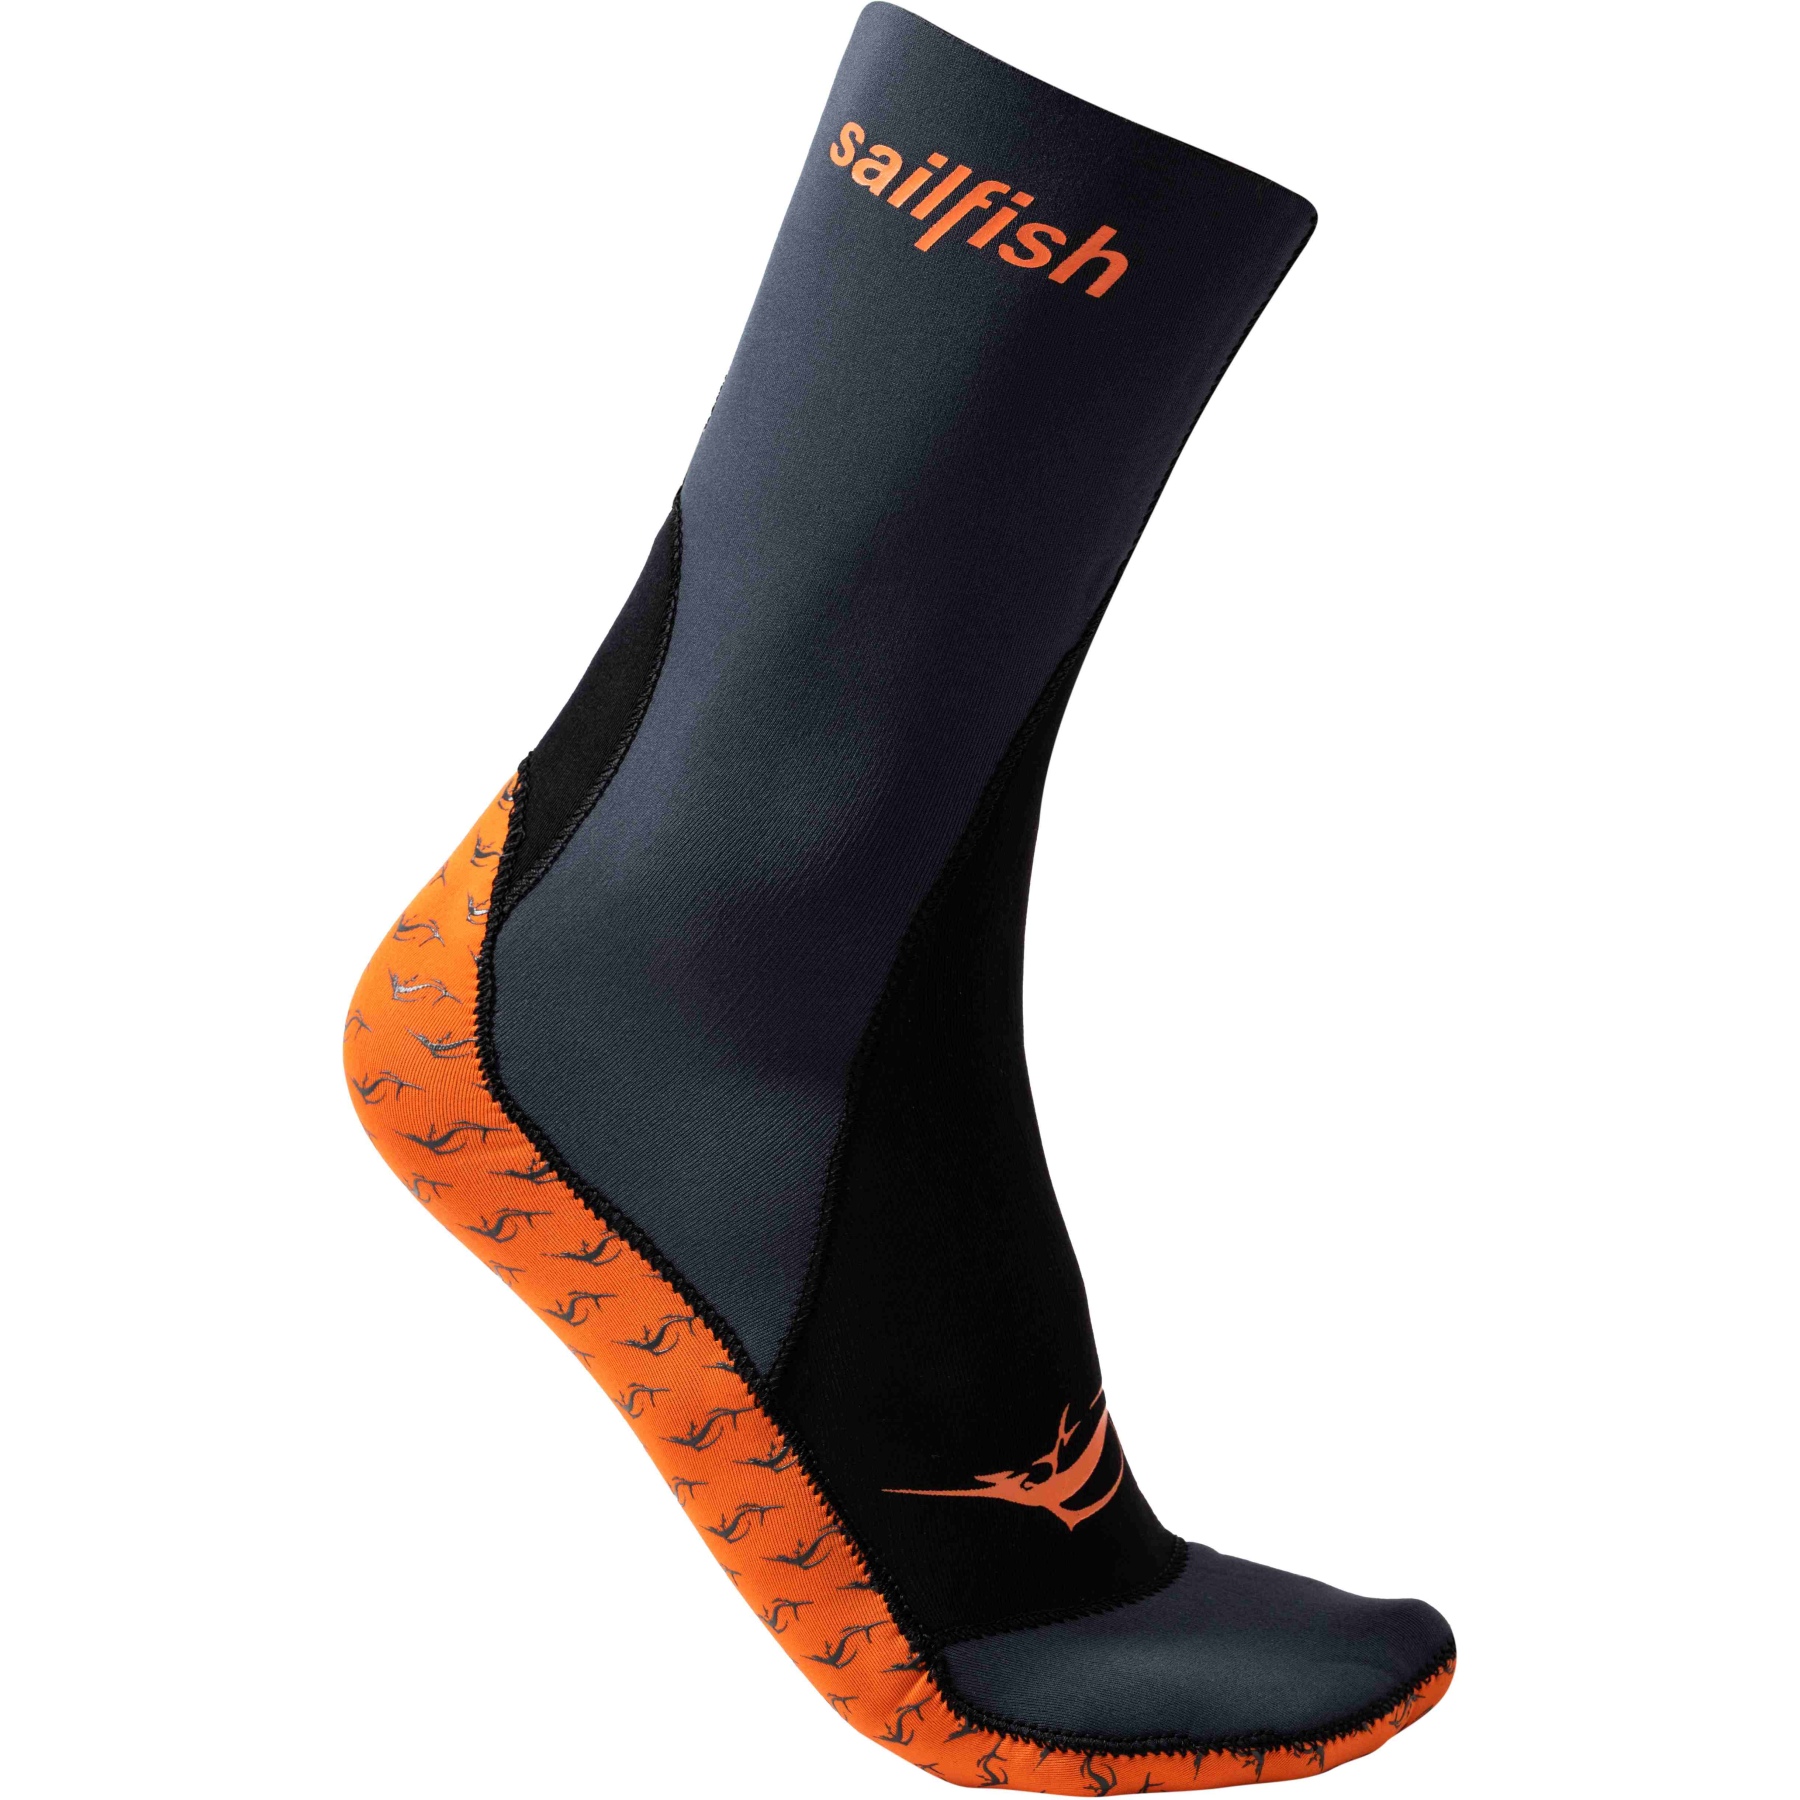 Produktbild von sailfish Neoprene Socken - orange